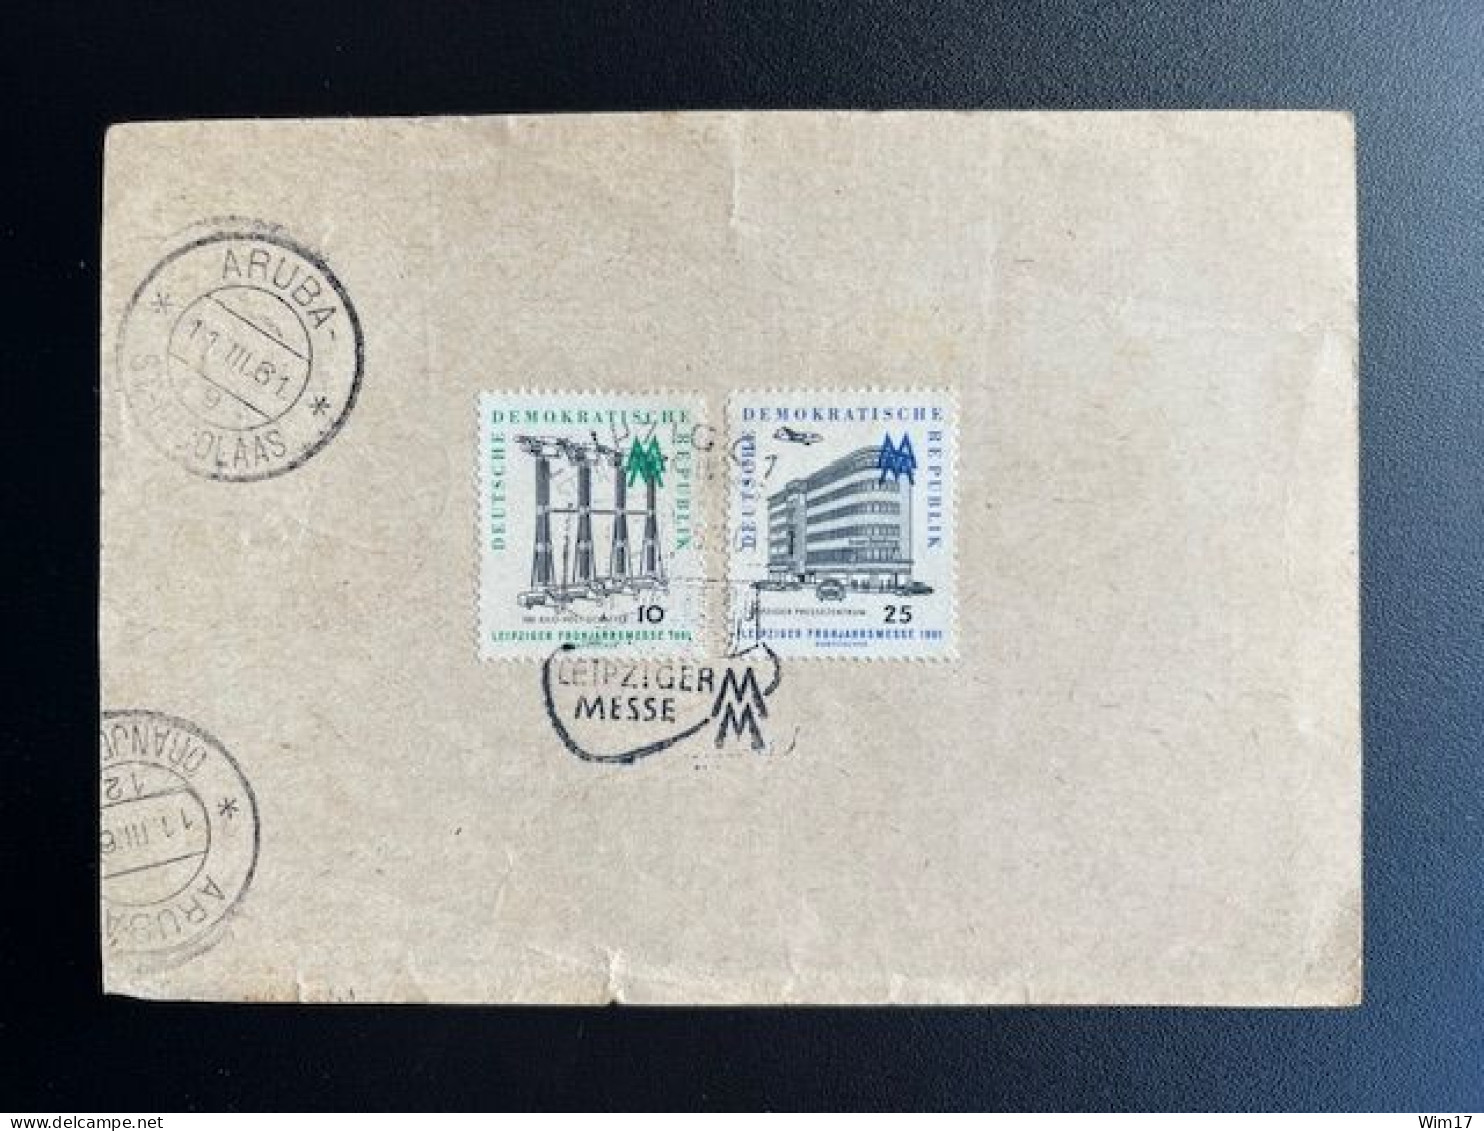 EAST GERMANY DDR 1961 POSTCARD LEIPZIG TO ST. NICOLAAS ARUBA 05-03-1961 OOST DUITSLAND DEUTSCHLAND LEIPZIGER MESSE - Postkarten - Gebraucht